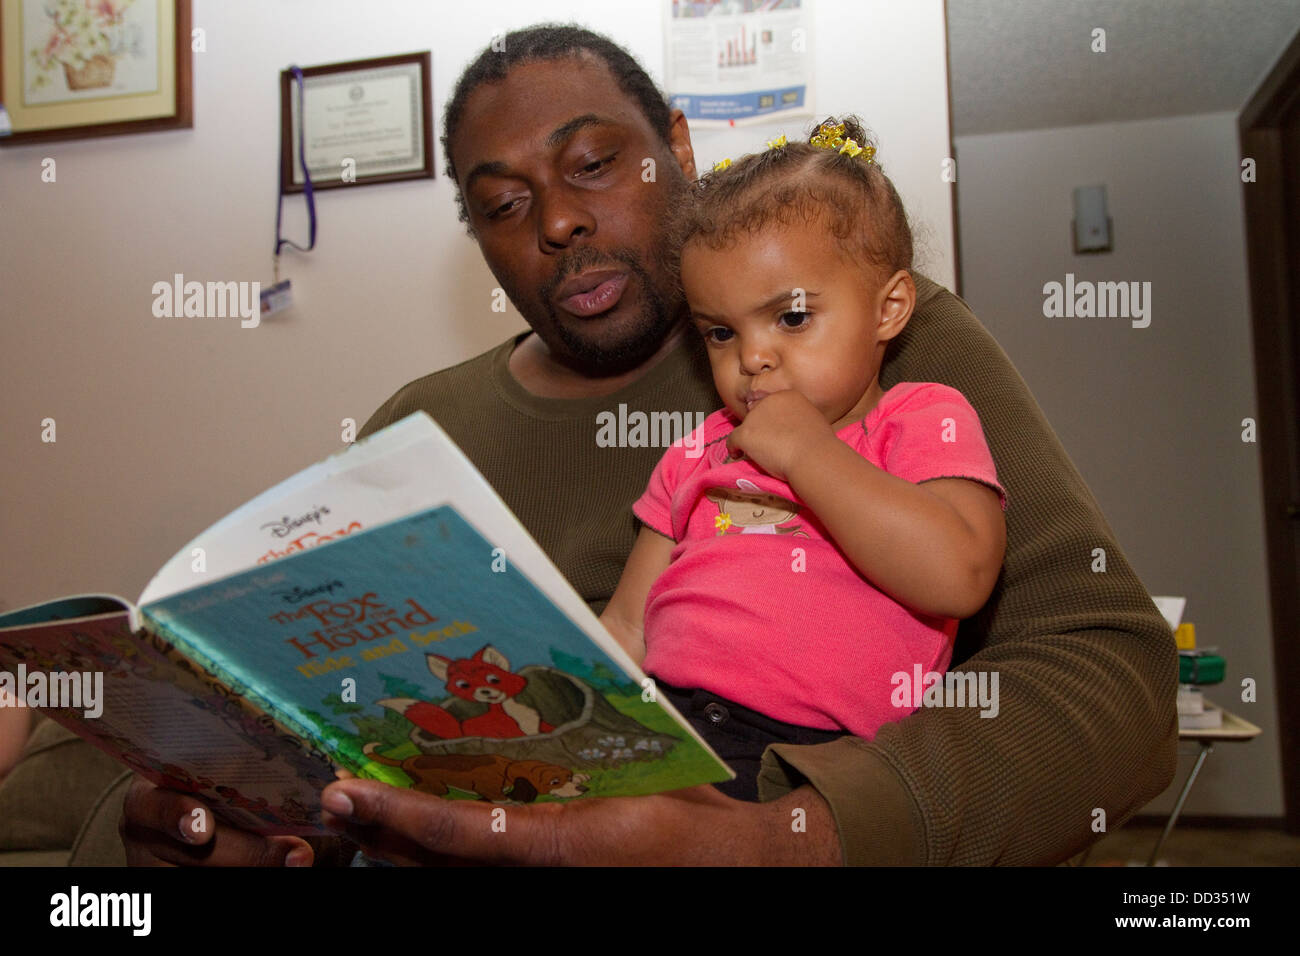 Les hommes afro-américains ex-détenu la lecture à sa jeune fille. Ce détenu a réussi à obtenir un diplôme après sa libération. Banque D'Images